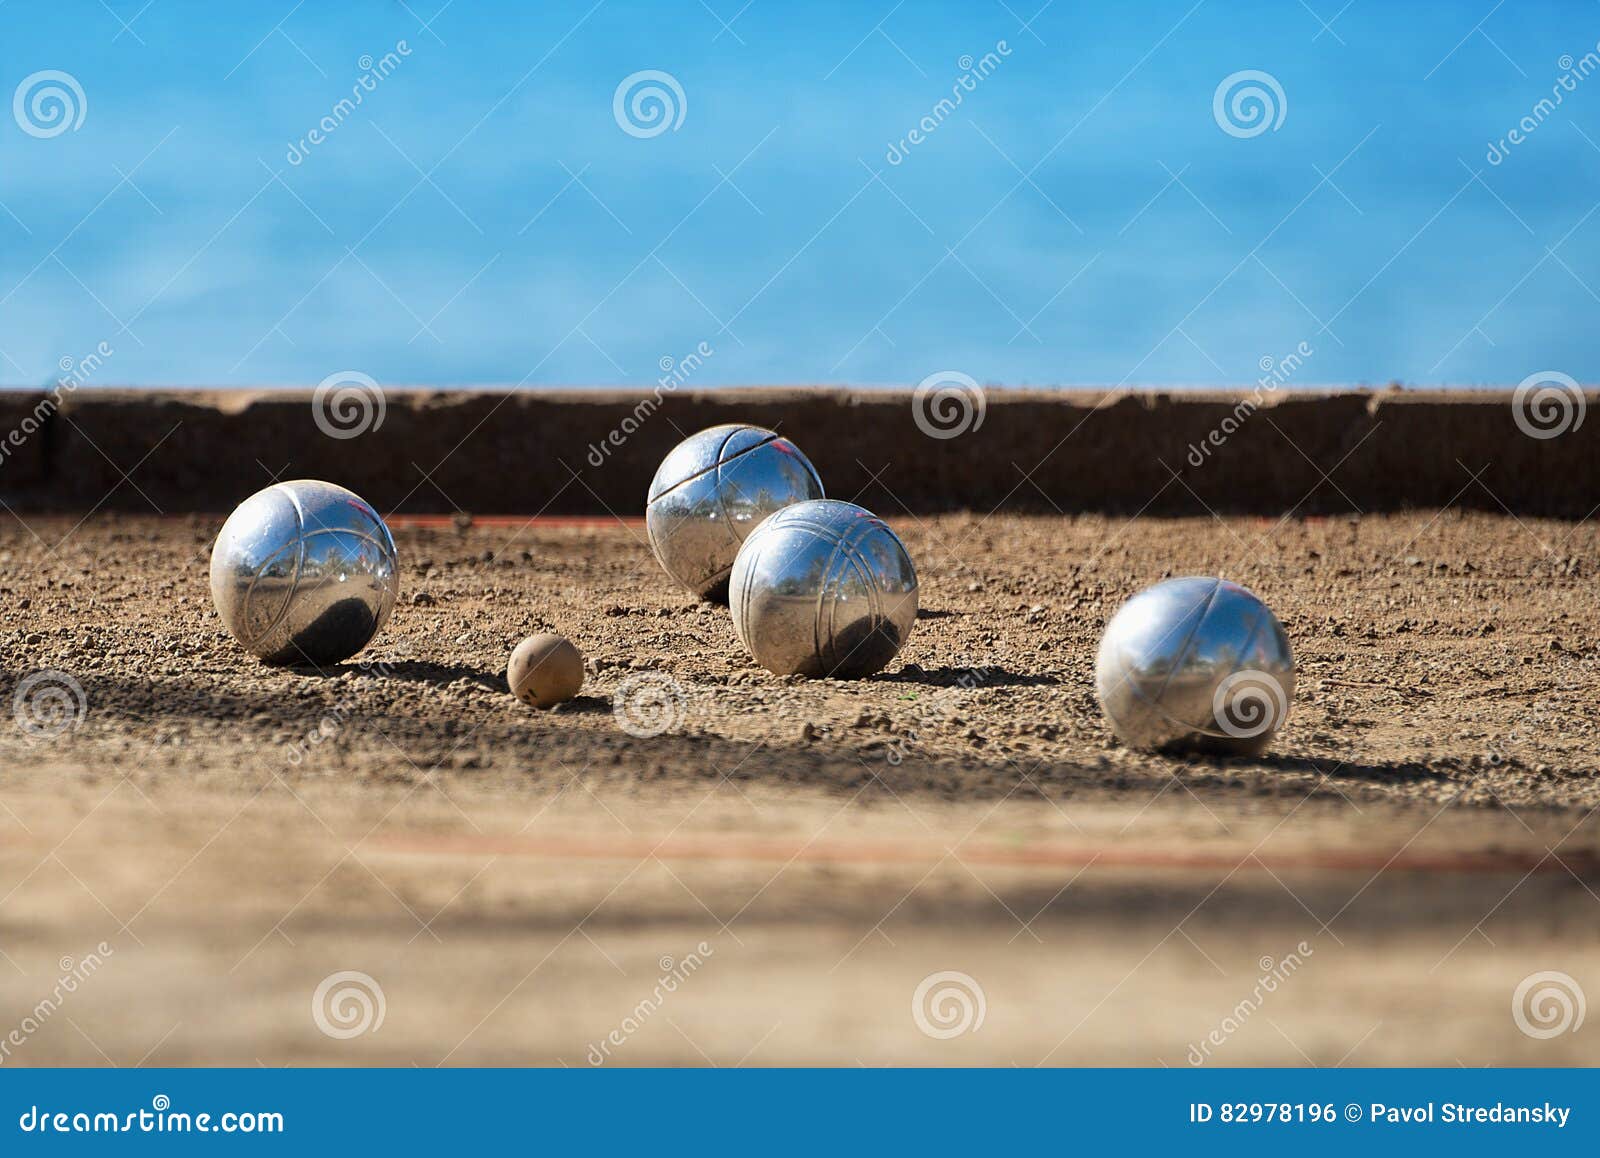 Metalliska bollar för petanque fyra